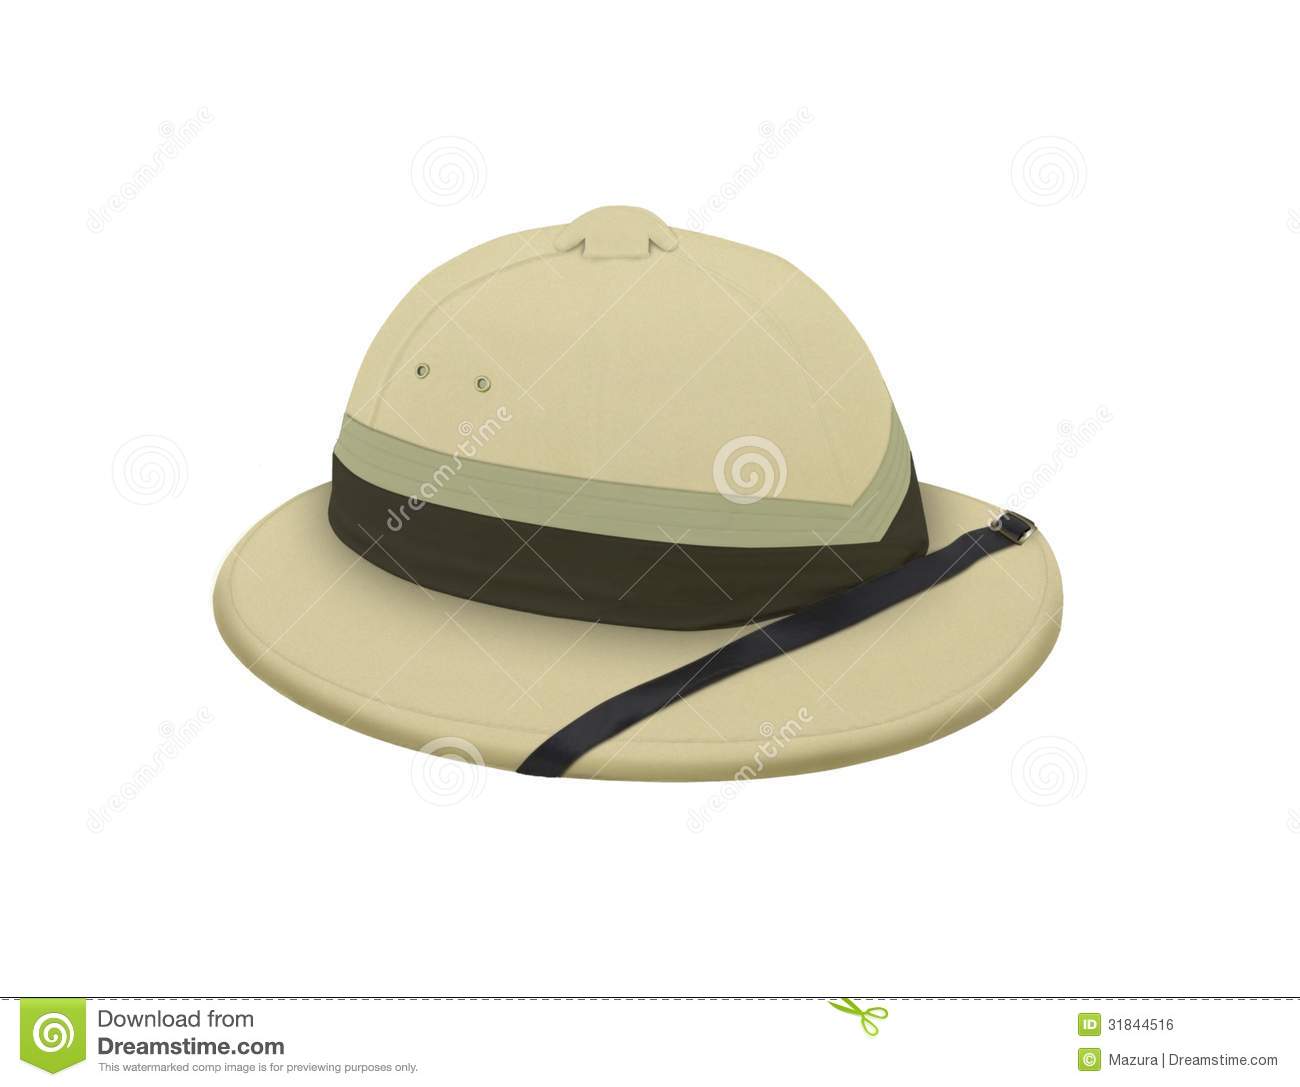 Explorer hat clipart.